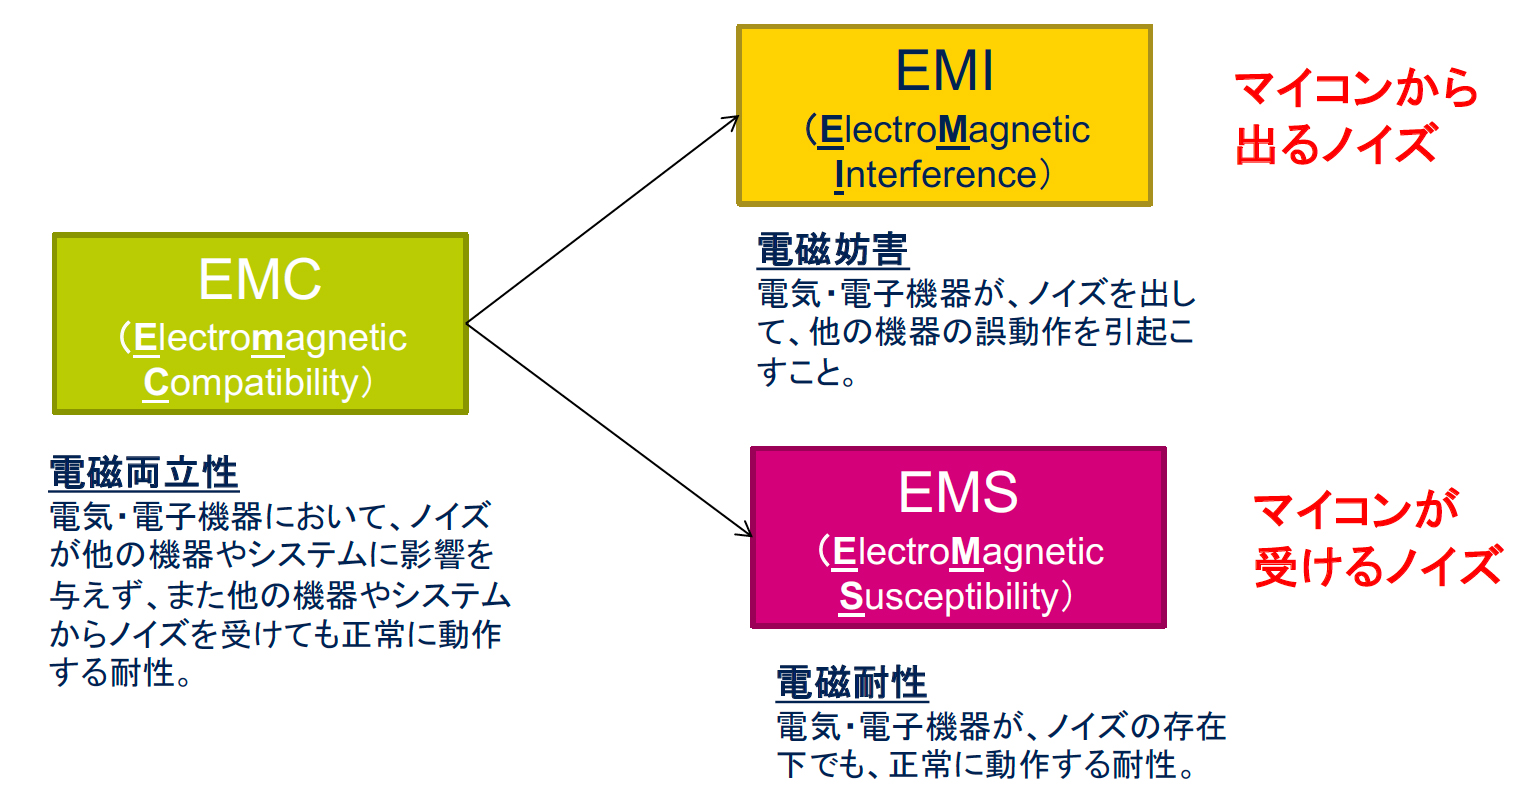 どのノイズ対策が最も効果的か よくあるems対策を比較する 準備編 ハイレベルマイコン講座 Ems対策 1 1 3 ページ Edn Japan